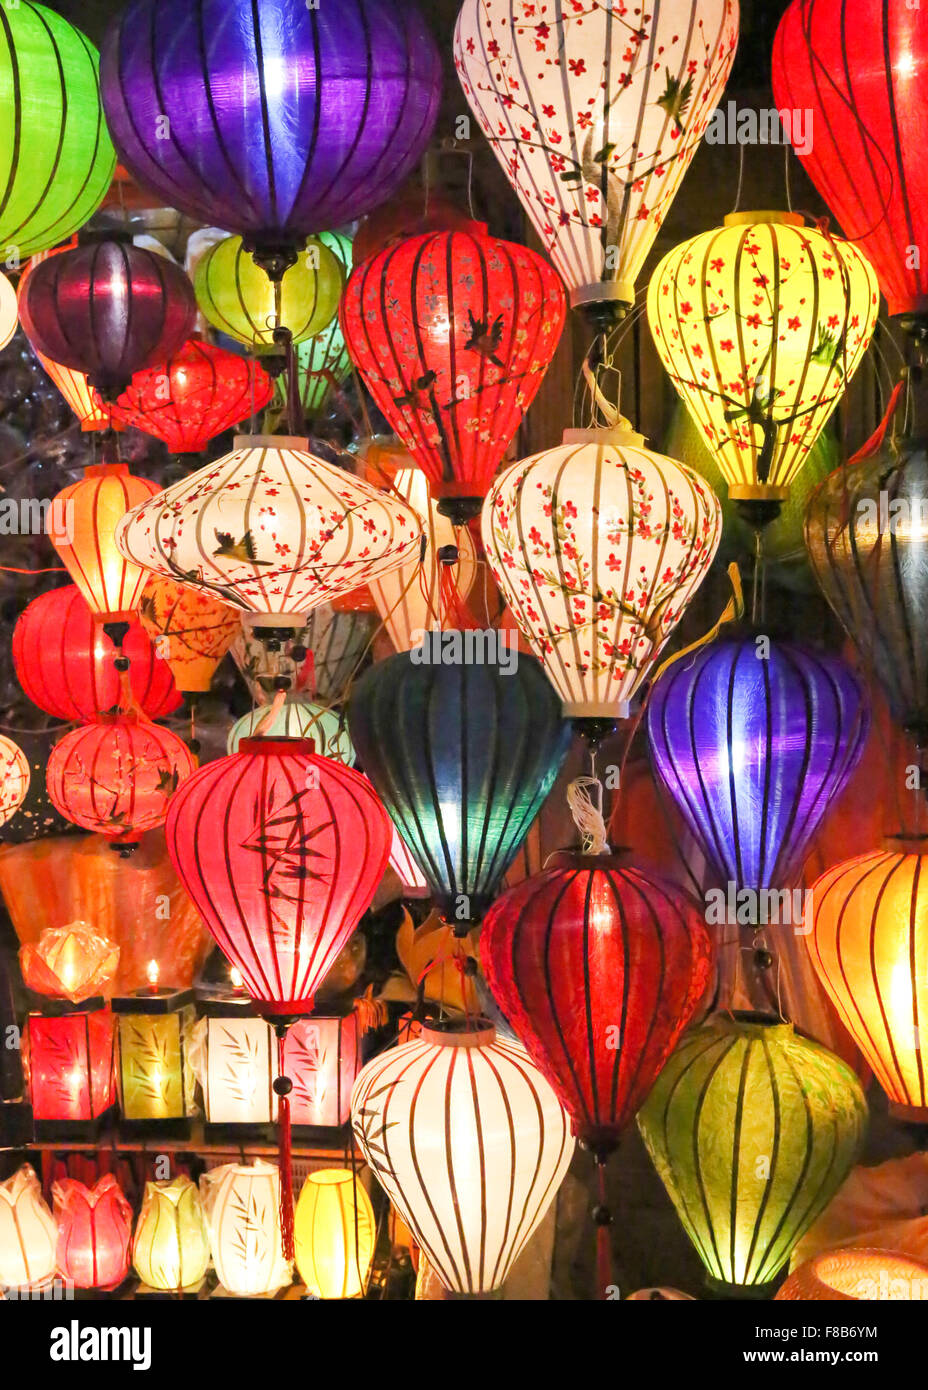 Linternas asiática tradicional y colorida en un puesto en el mercado Foto de stock